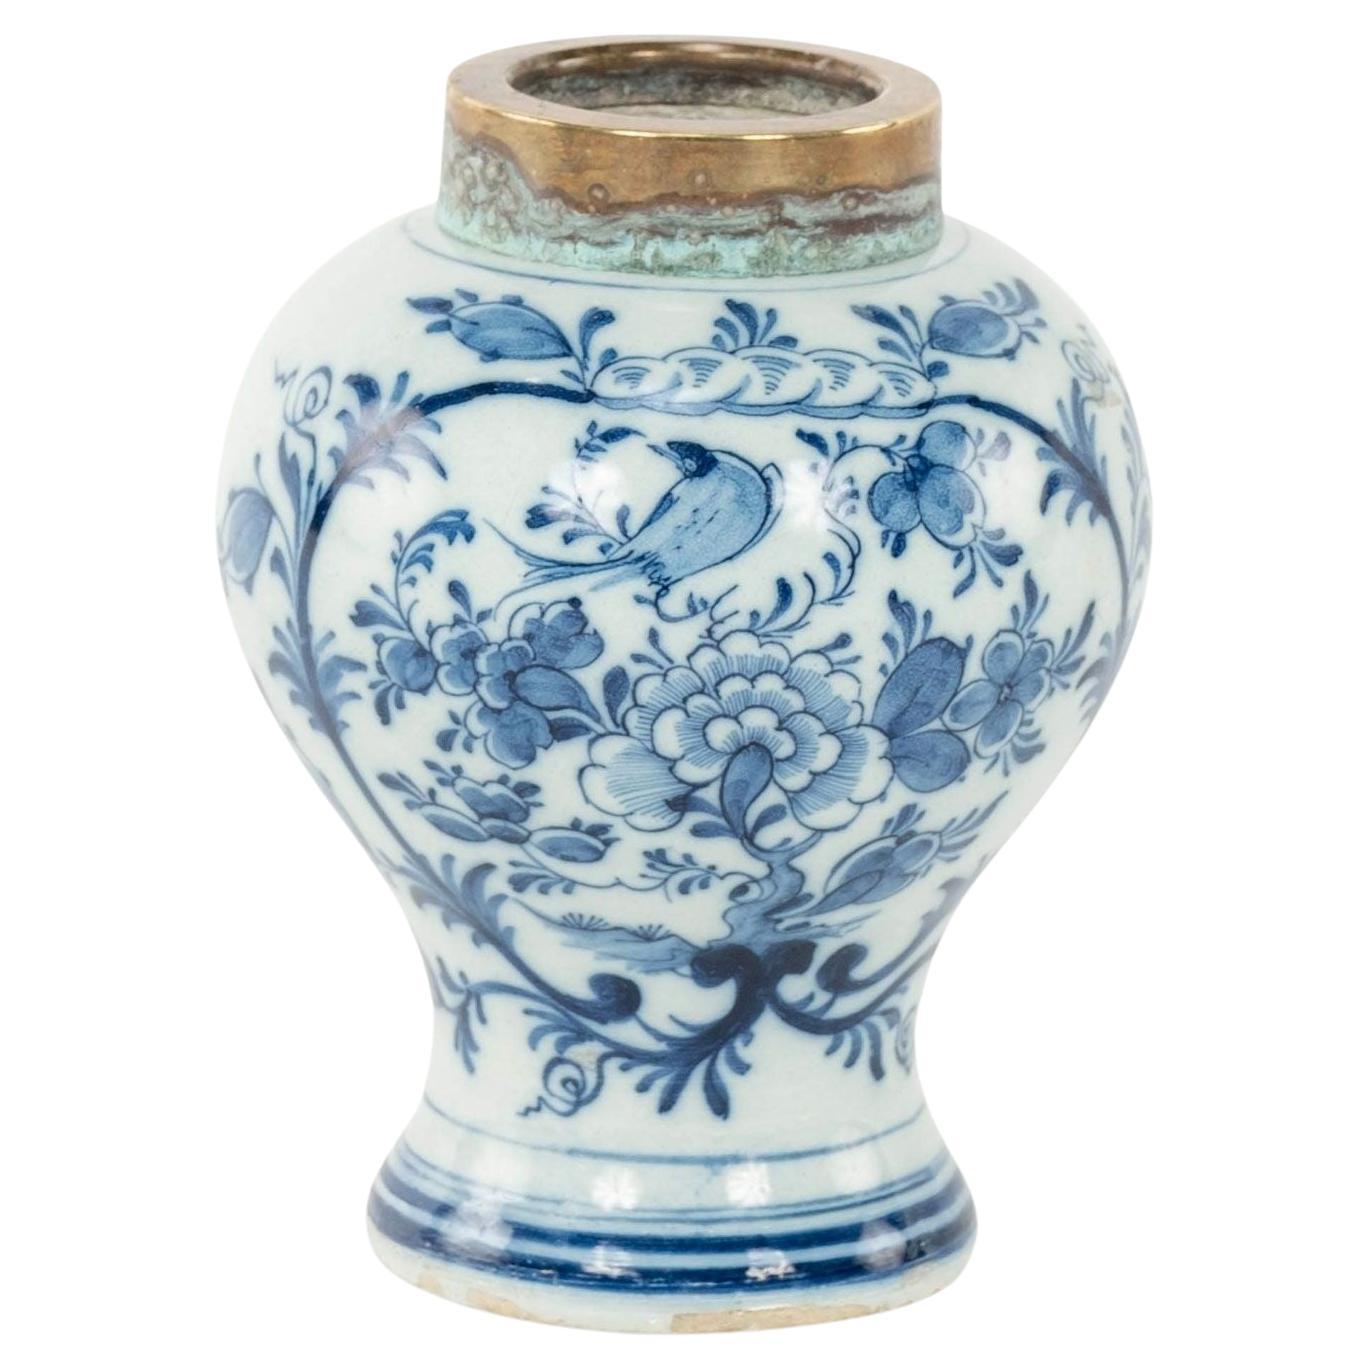 Petite jarre à tabac de Delft bleue et blanche